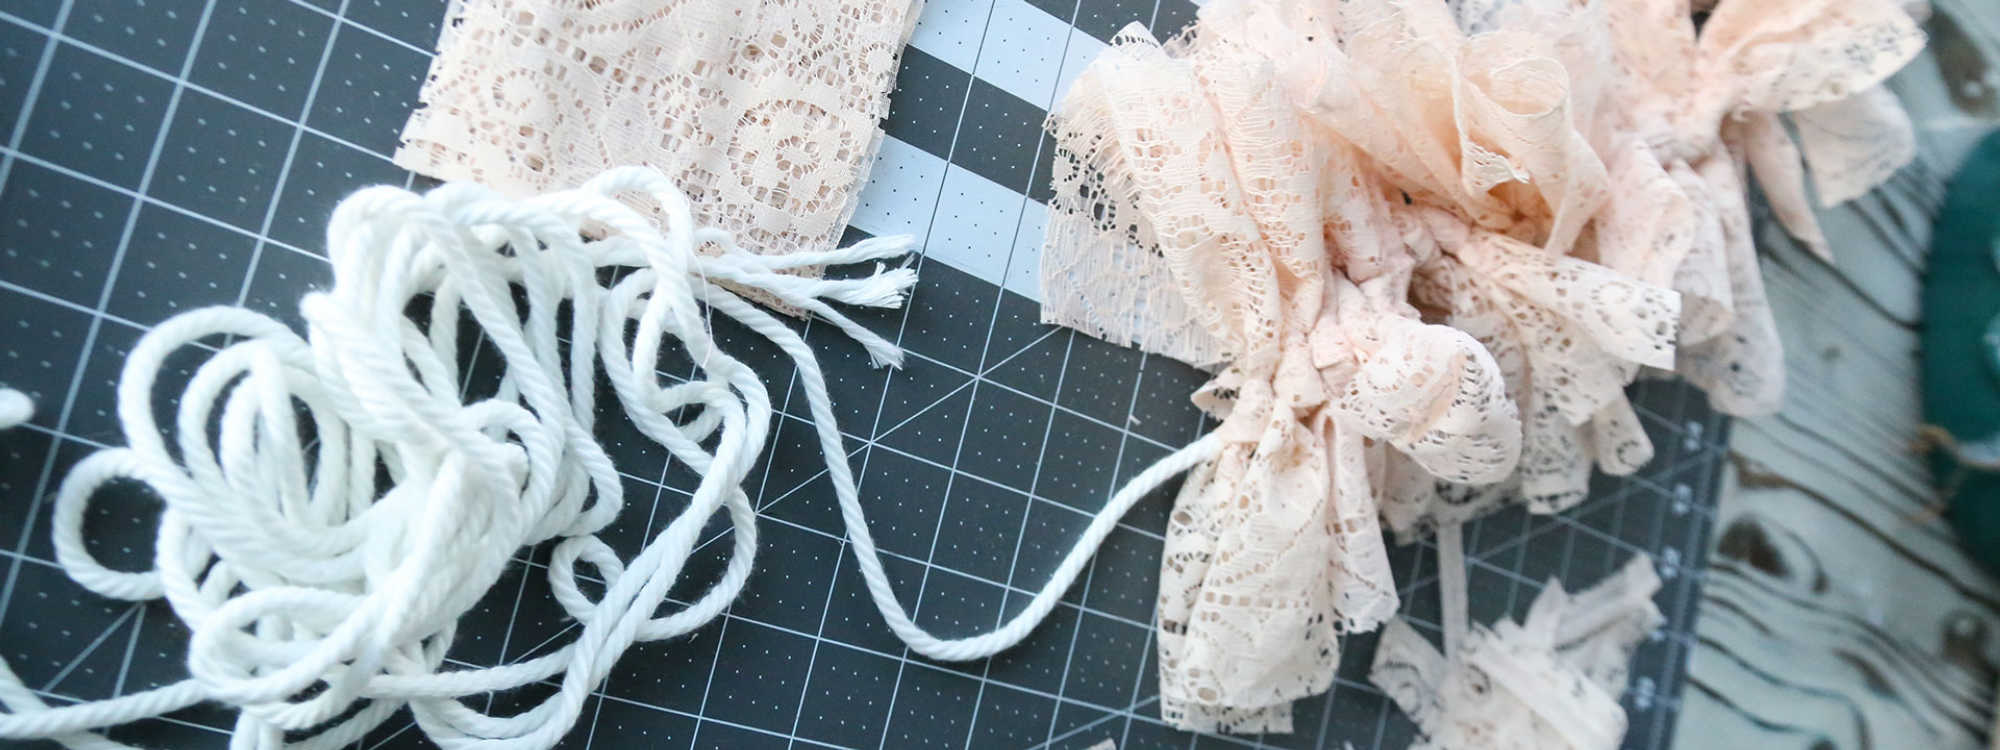 Making a lace garland.